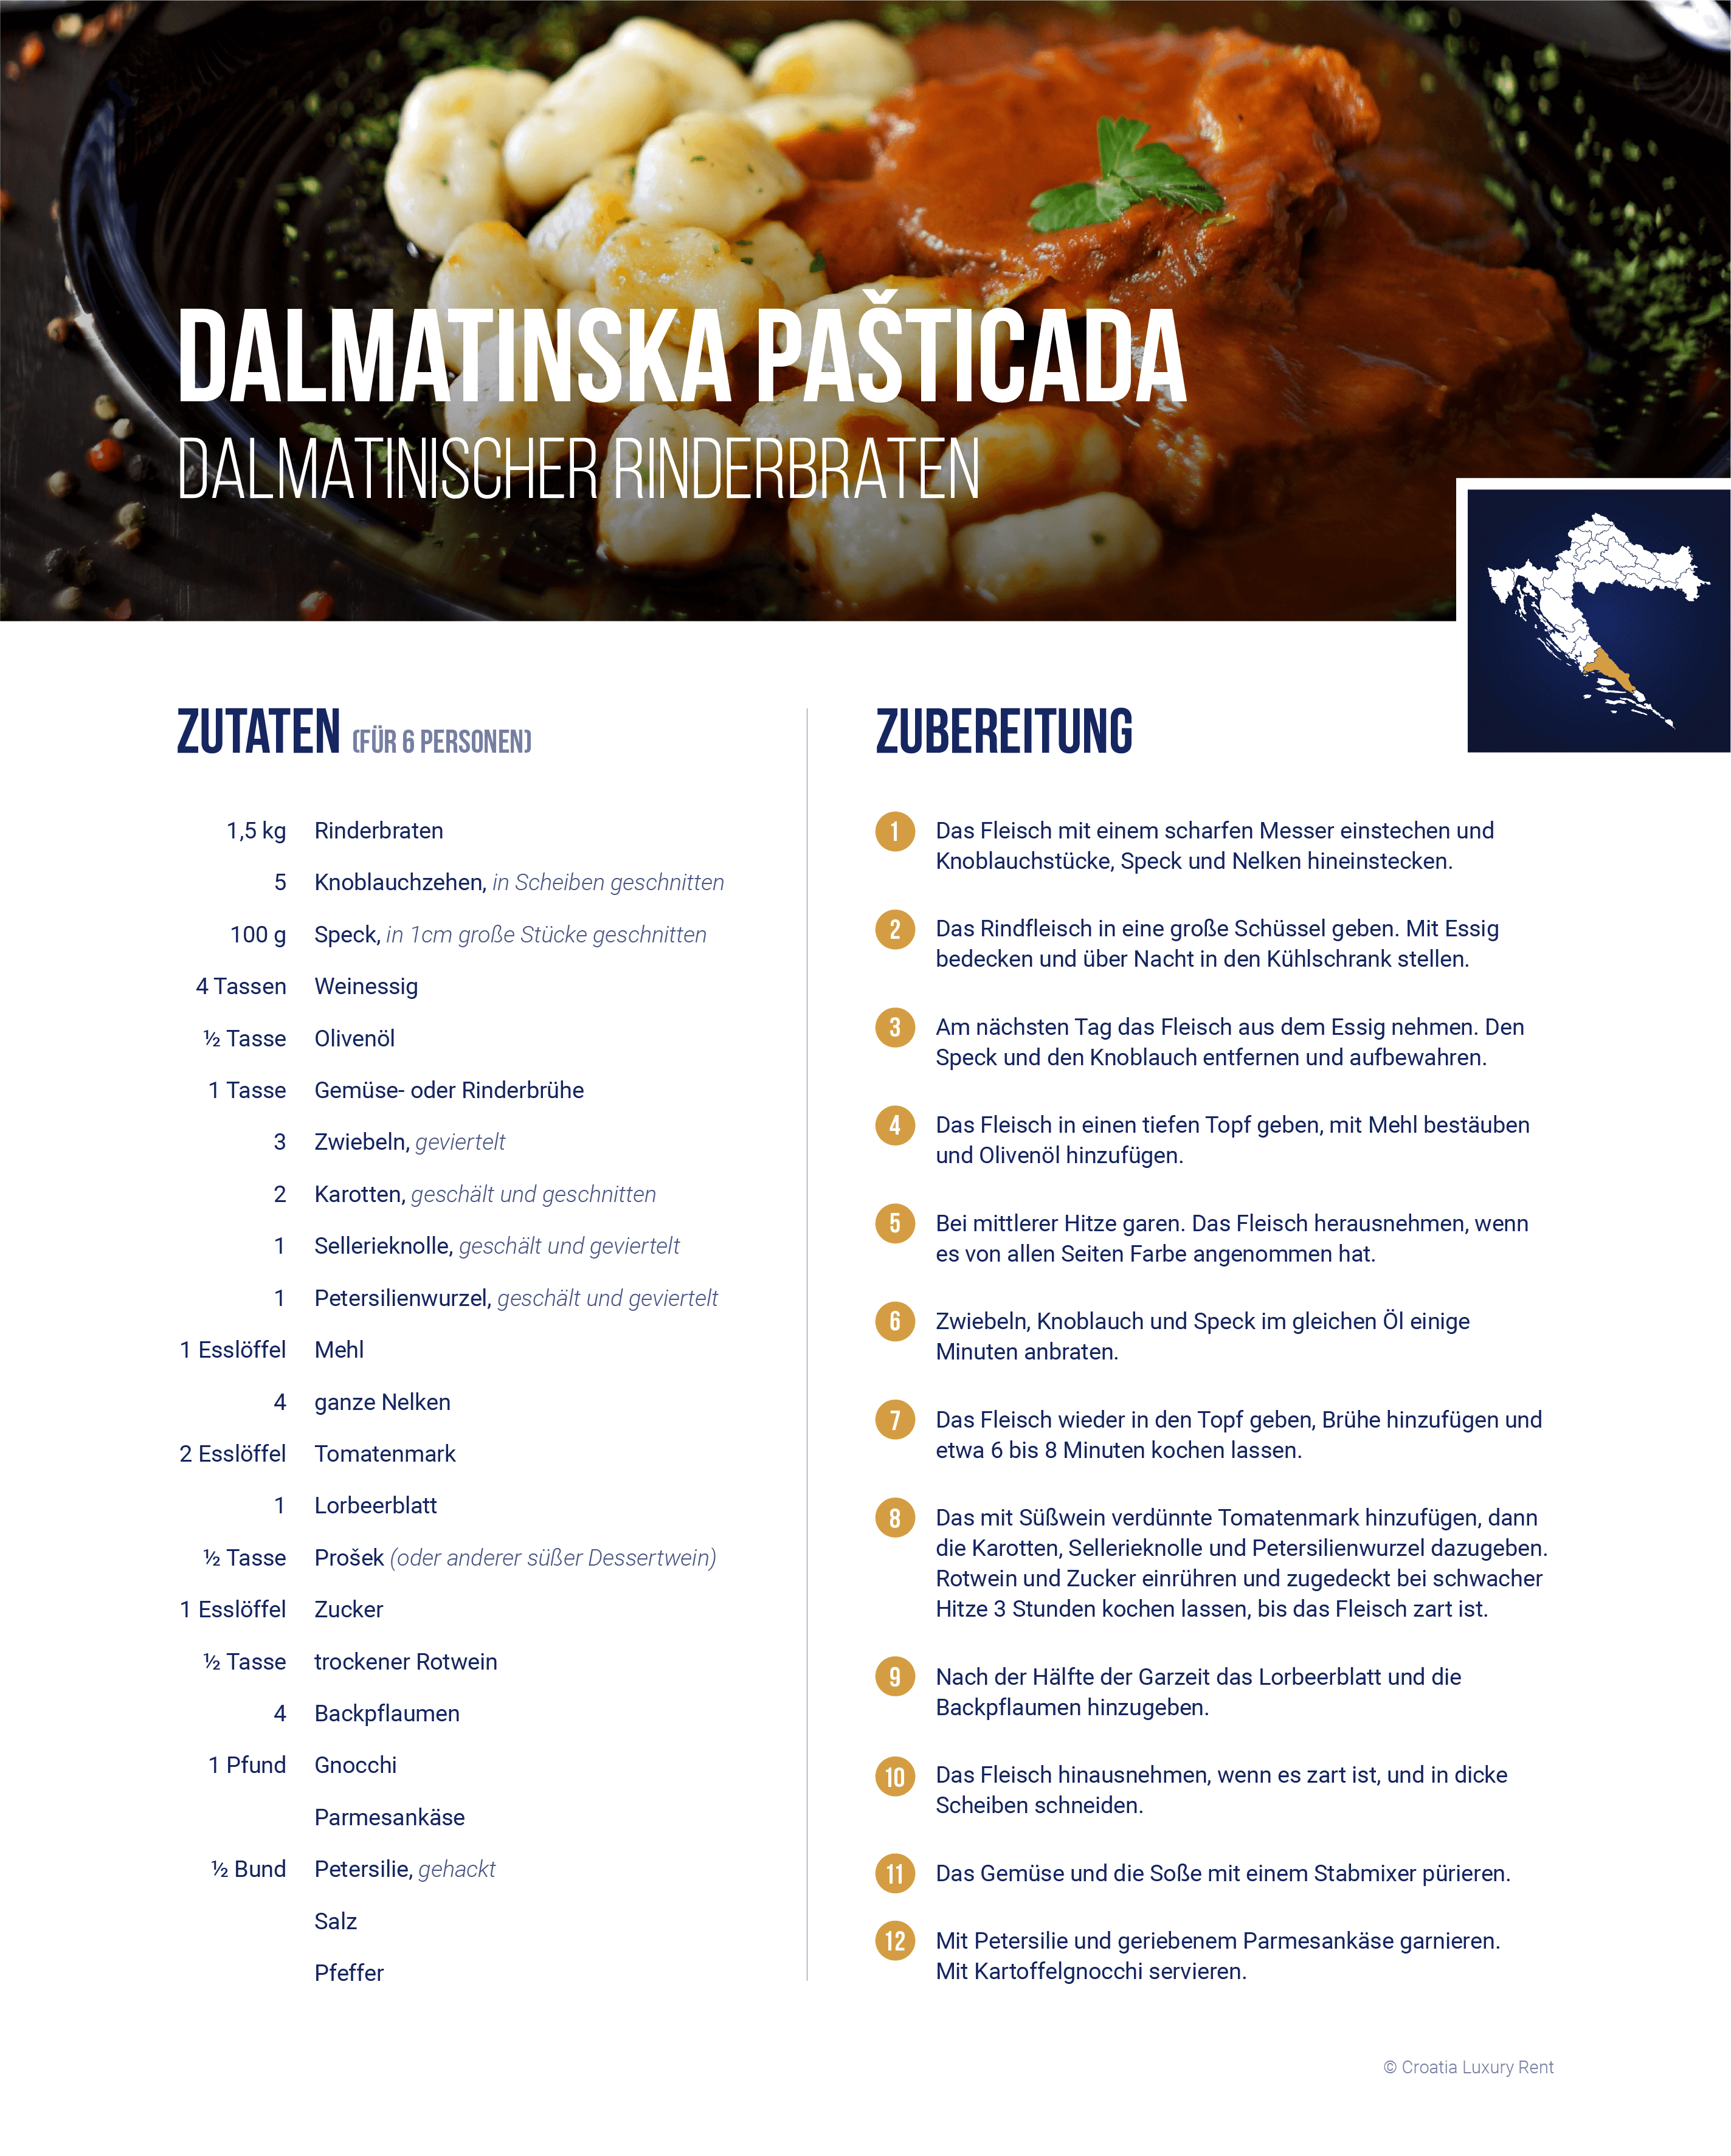 Rezept „Dalmatinischer Rinderbraten“ zum Nachkochen